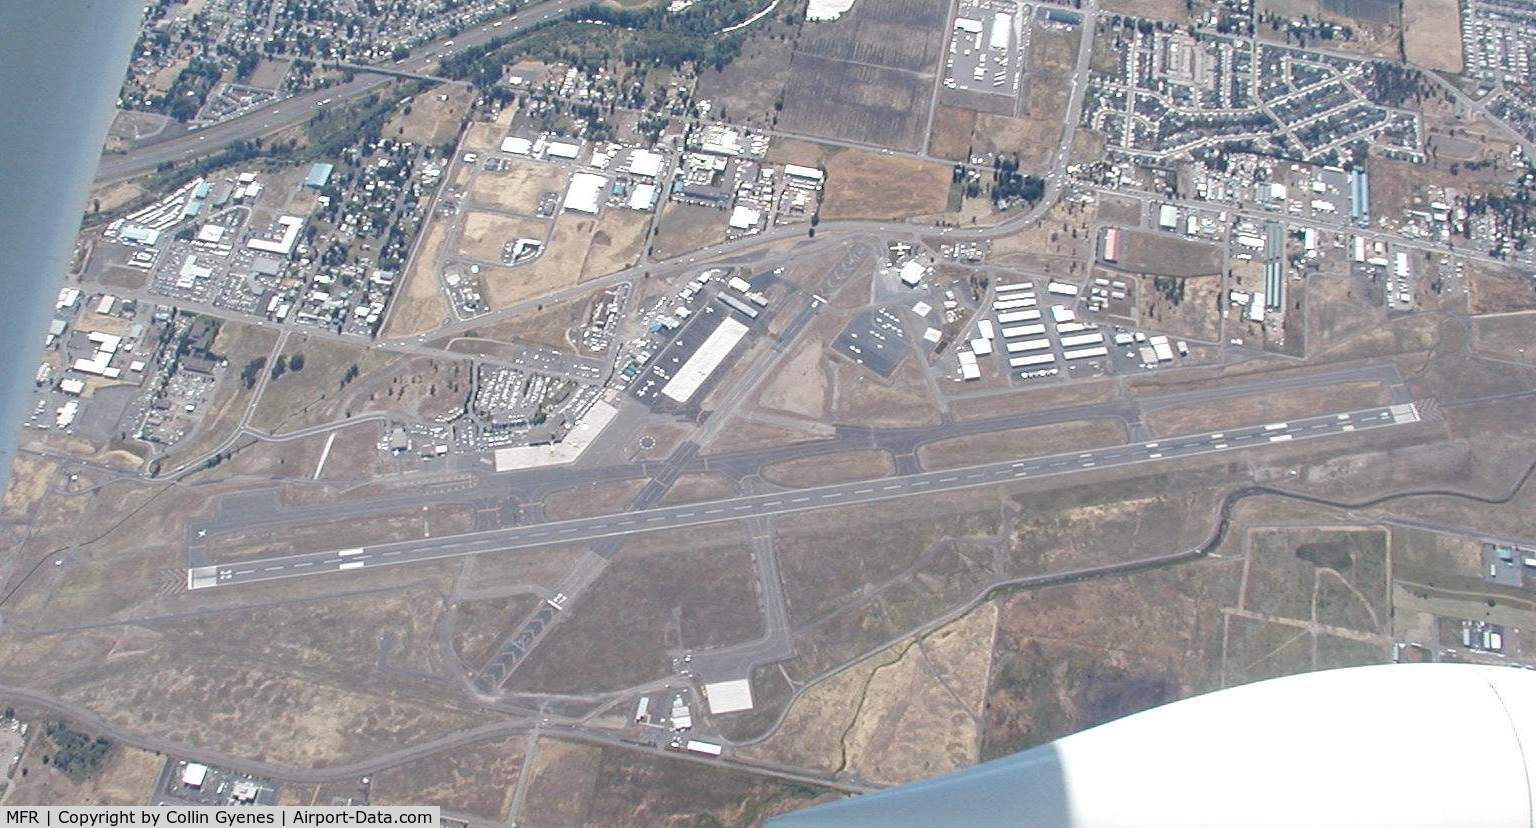 Rogue Valley International - Medford Airport (MFR) - Over Medford in Glastar